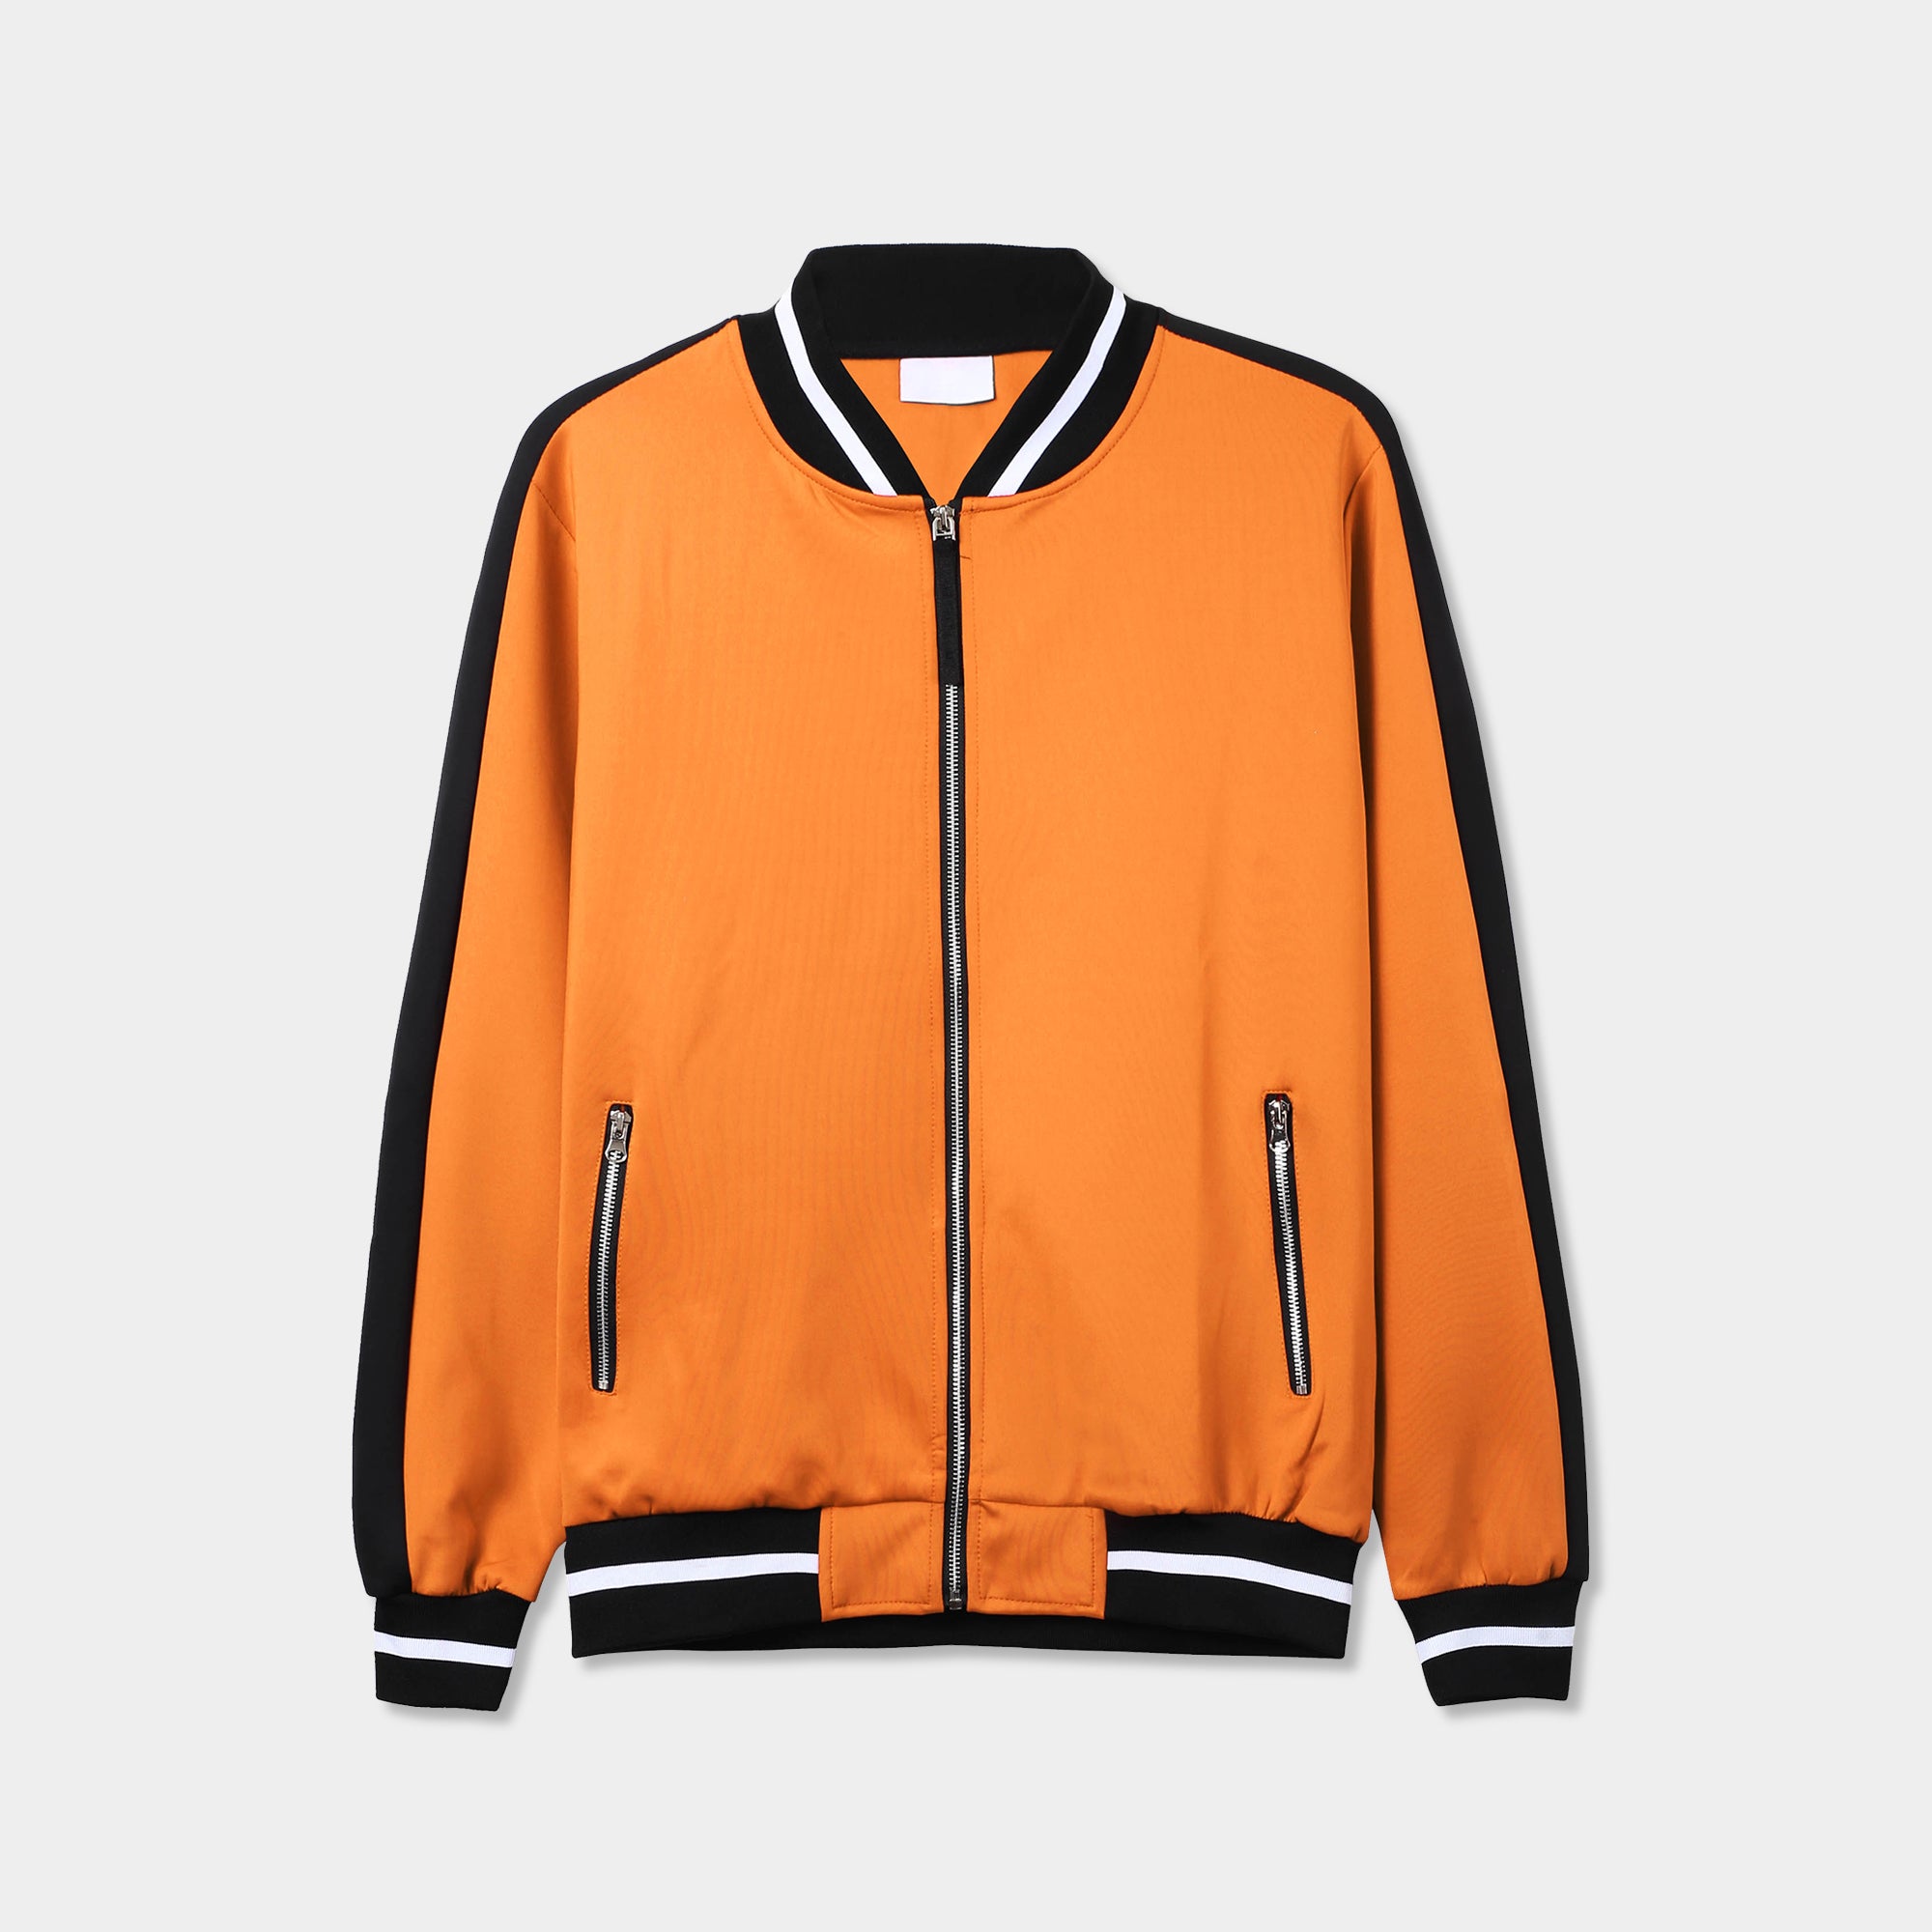 bomber jacket_mens bomber jacket_boys bomber jacket_flying jacket_h&m bomber jacket_champion bomber jacket_athletic bomber jacket_Orange